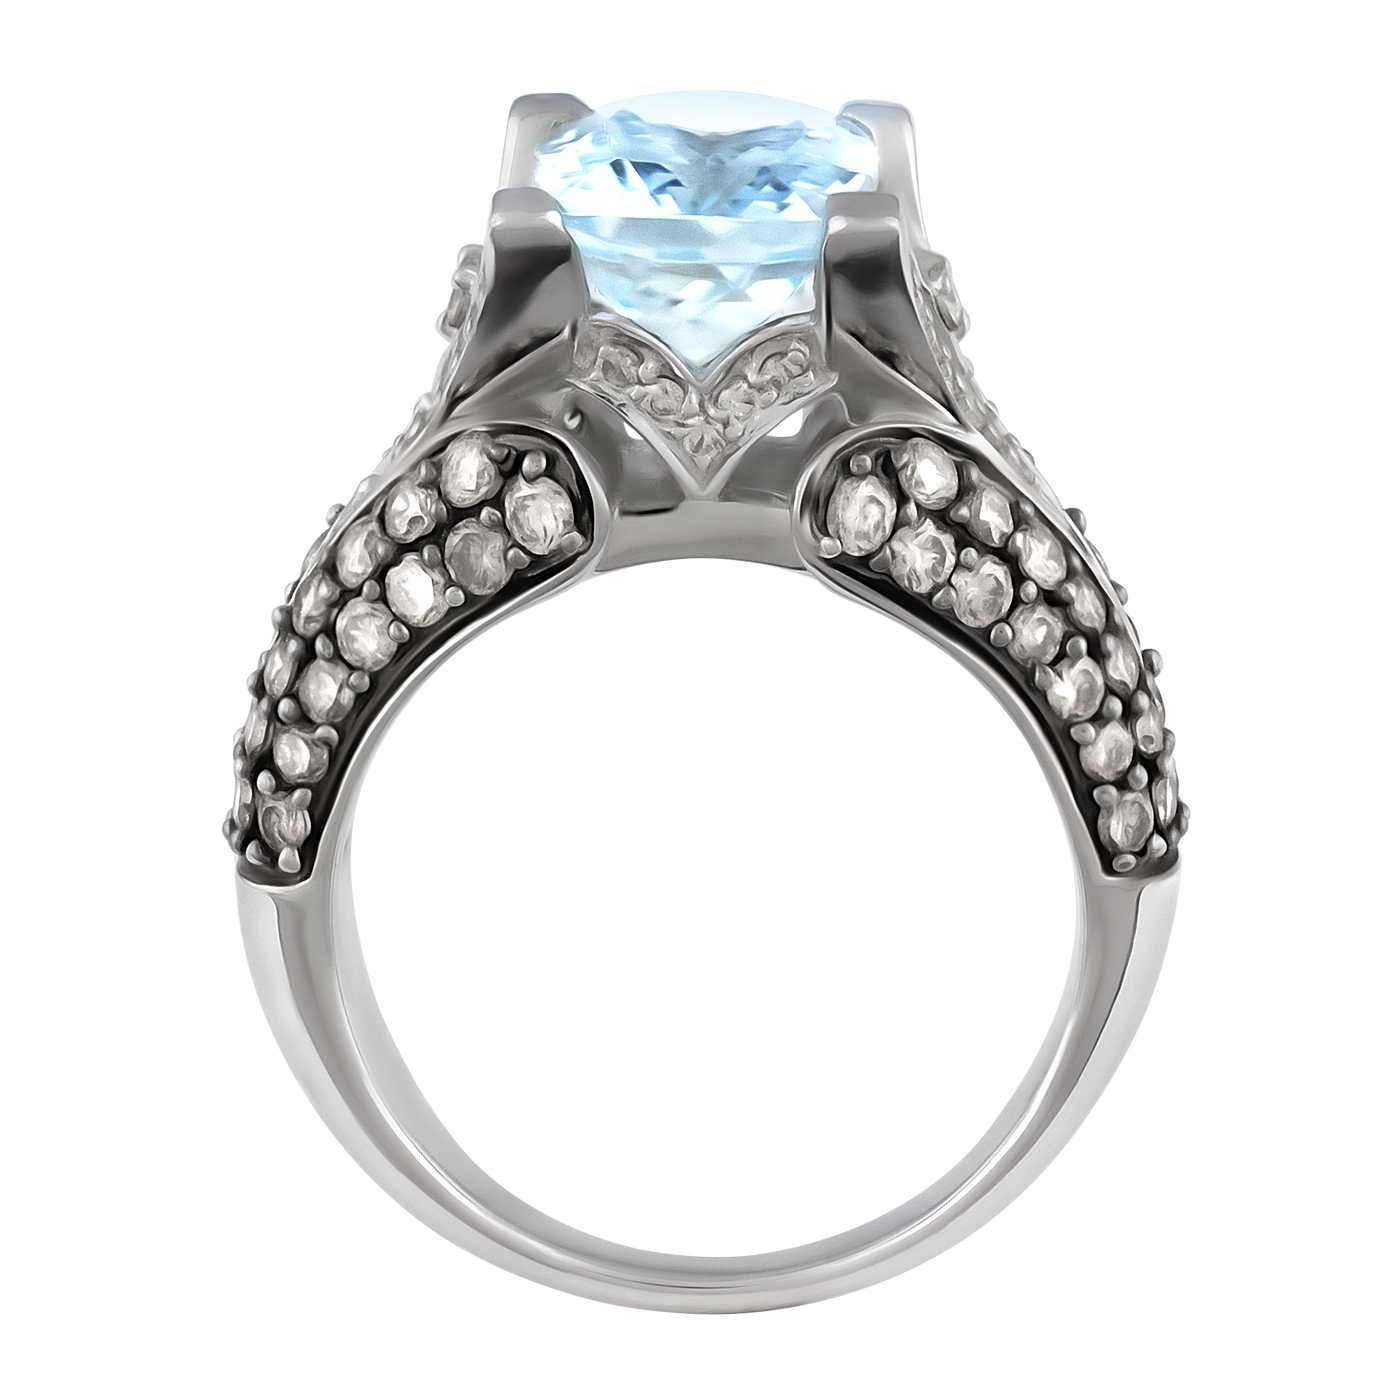 Le Vian 14K White Gold Blue Topaz & Diamond Ring